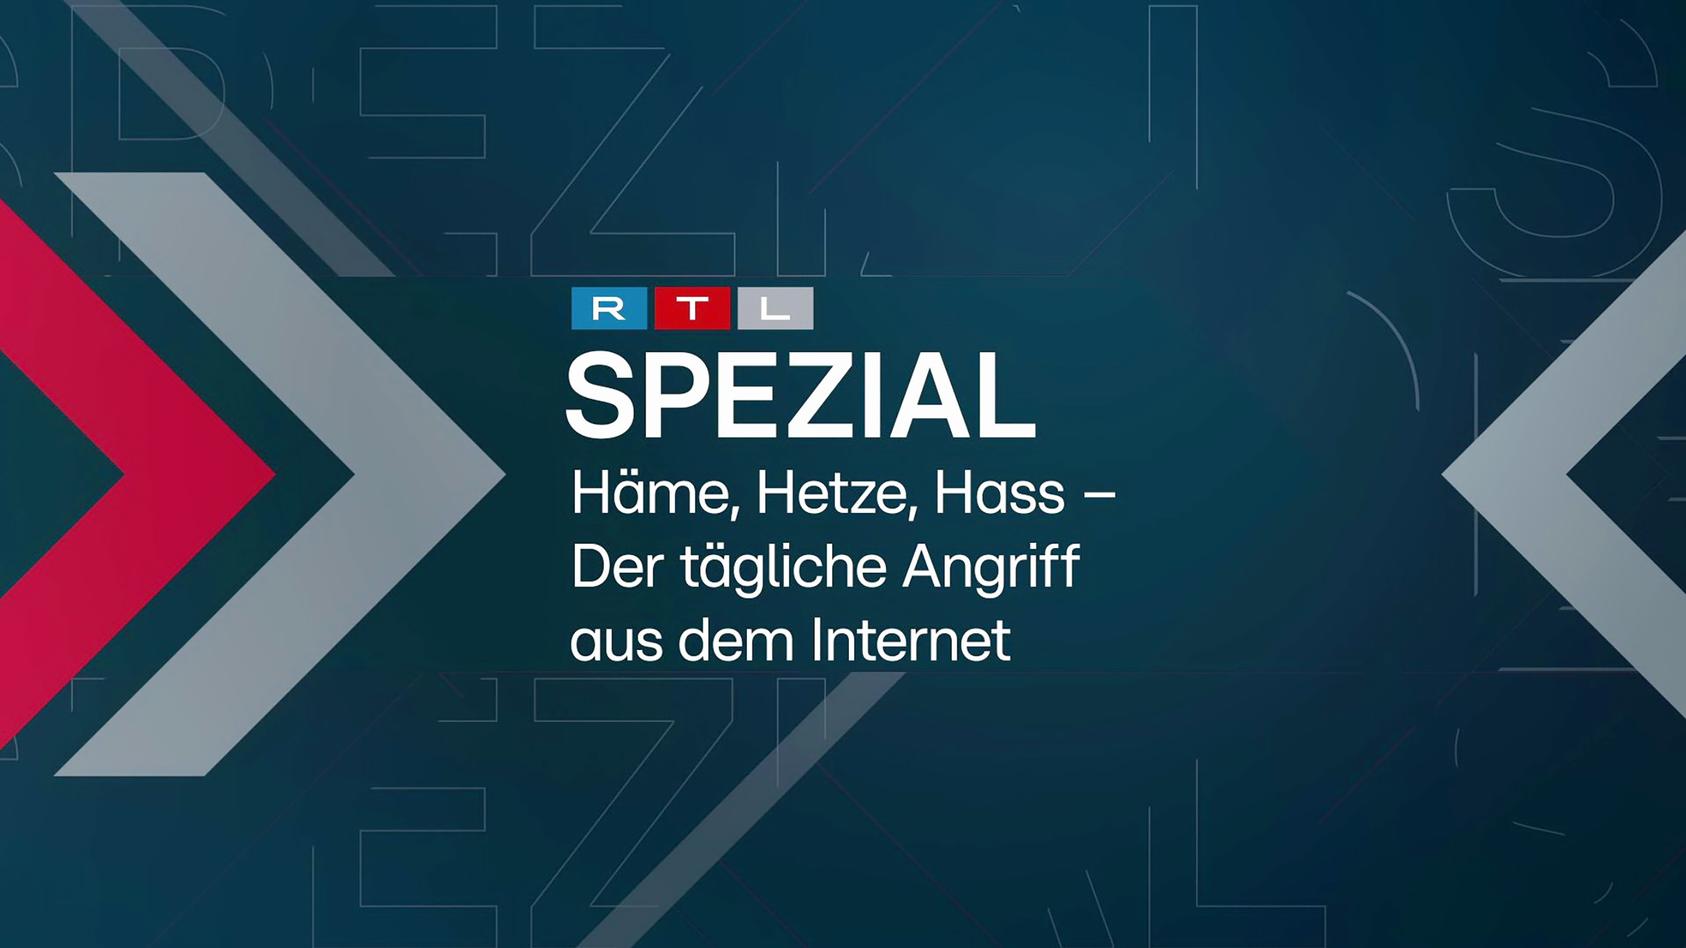 "RTL Spezial - Häme, Hetze, Hass - Der tägliche Angriff aus dem Internet"